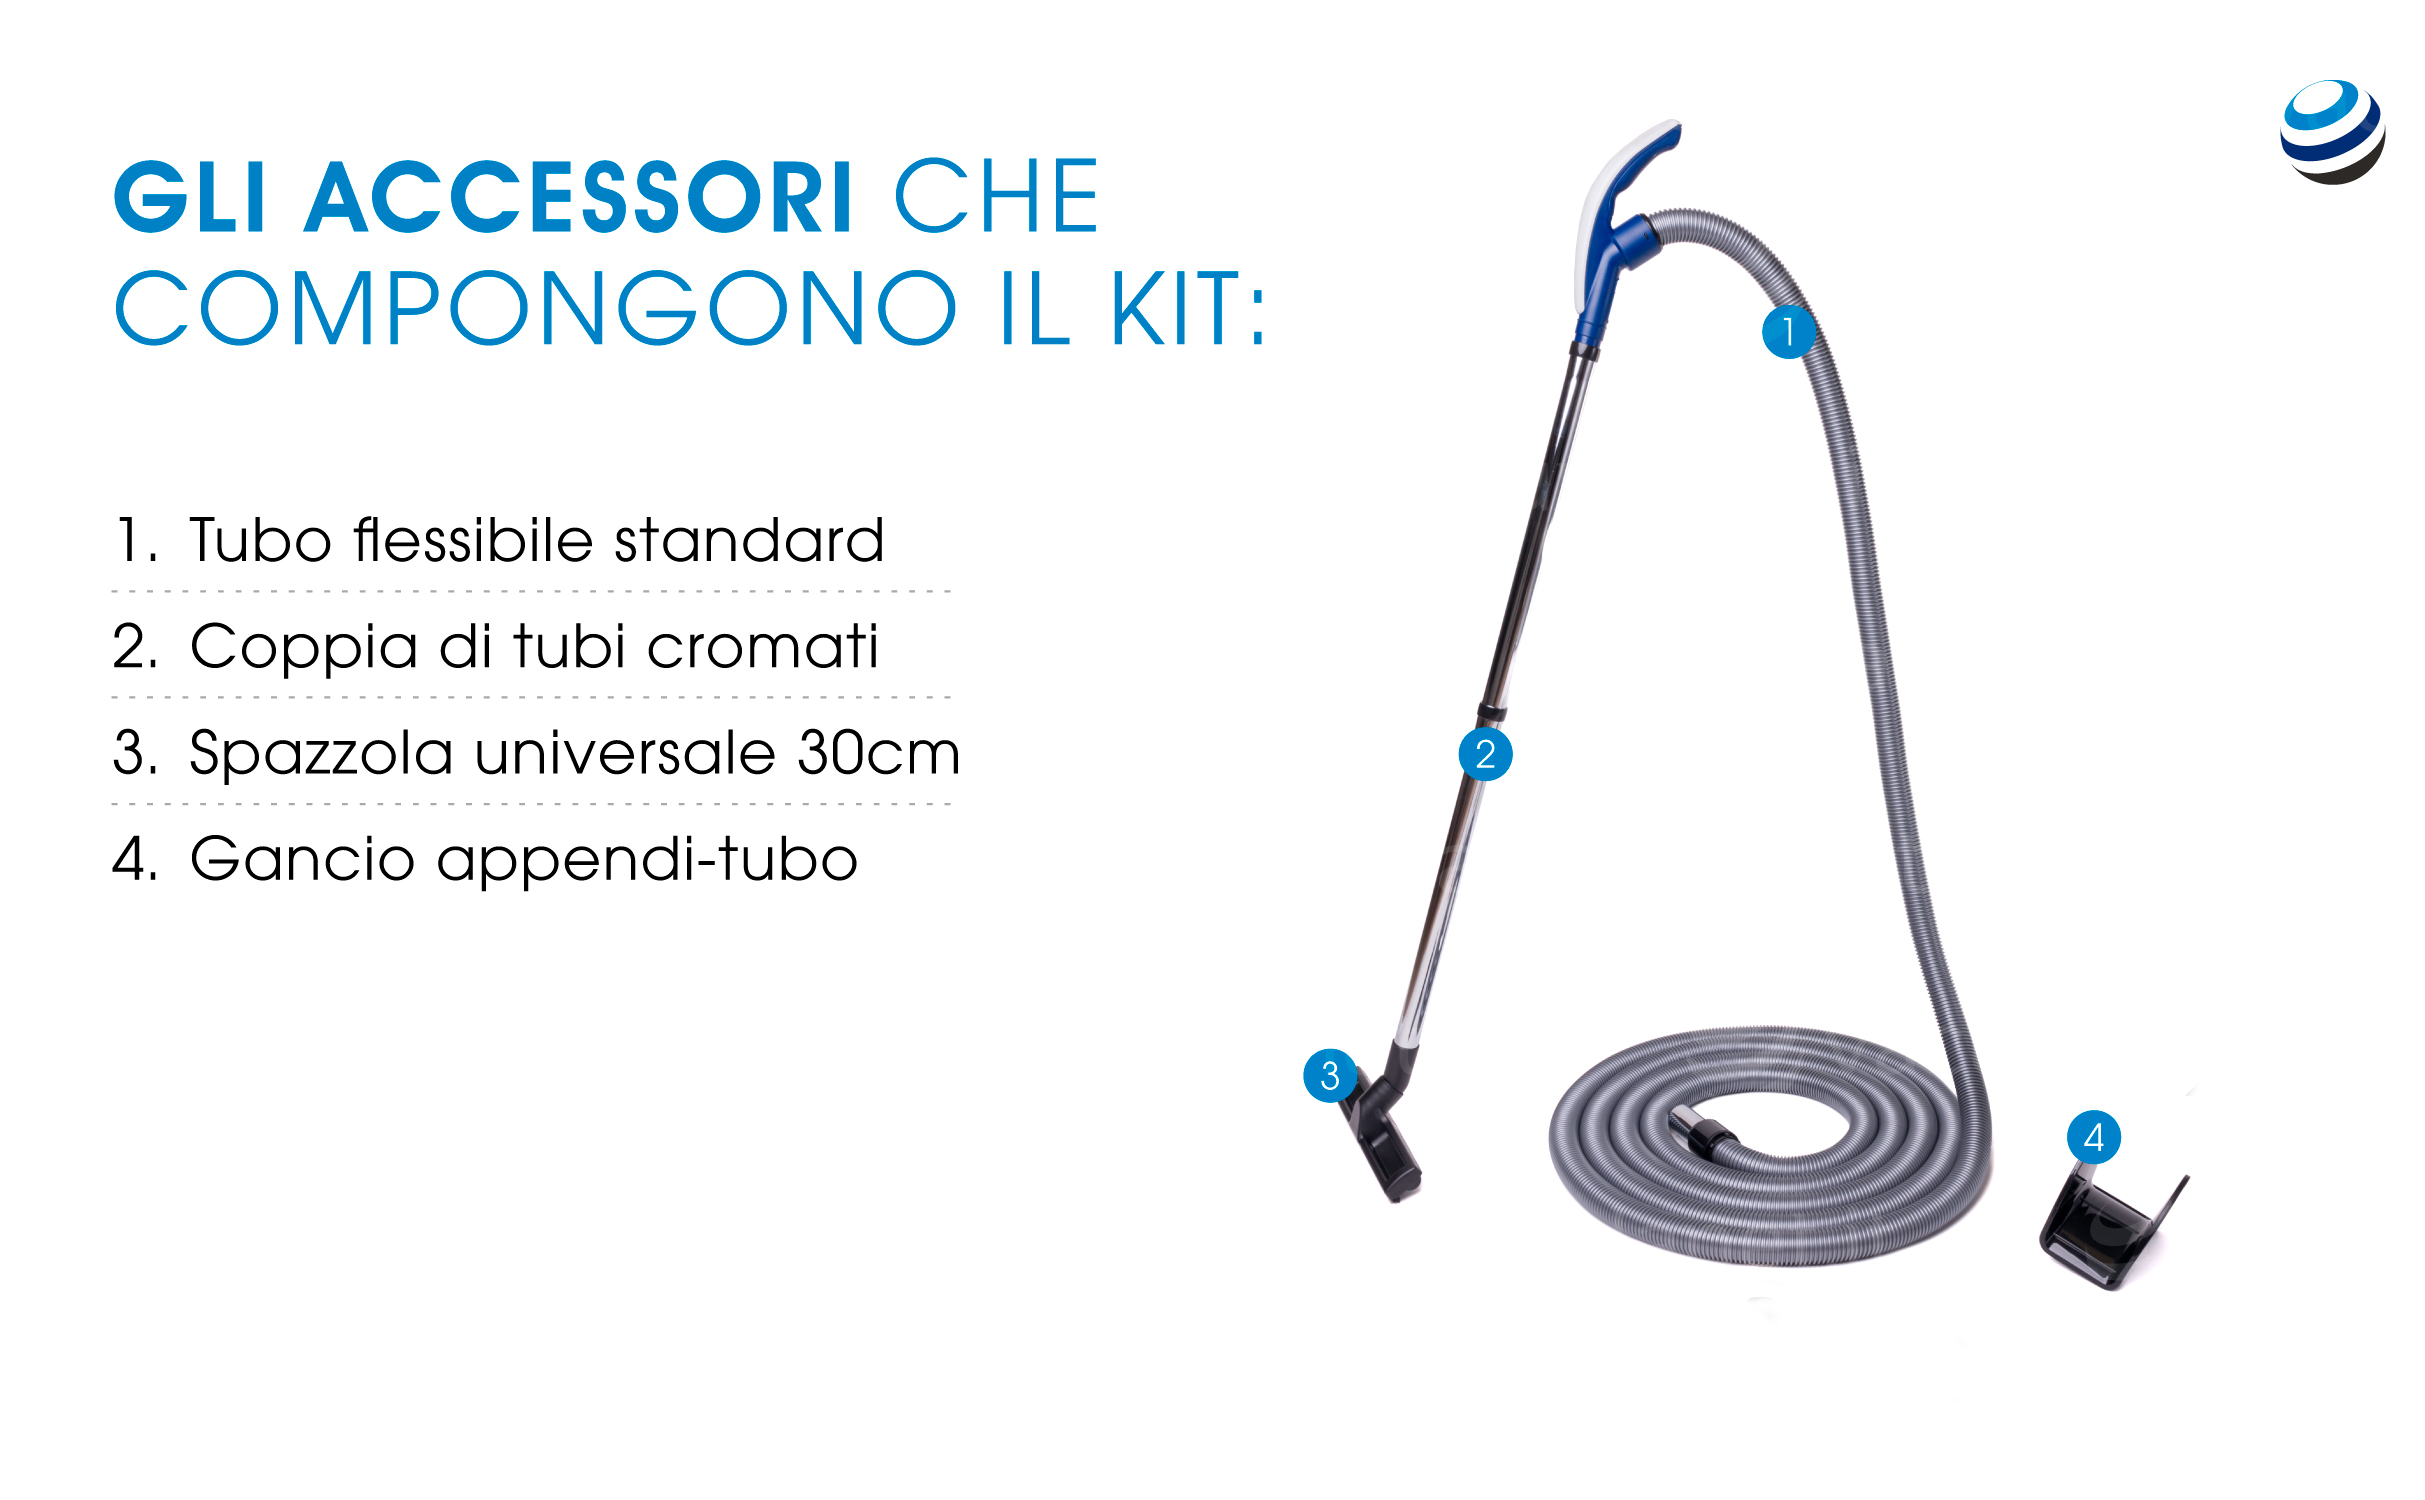 Gli accessori che compongono il kit: tubo flessibile standard, coppia di tubi cromati, spazzola universale 30cm, gancio appendi-tubo